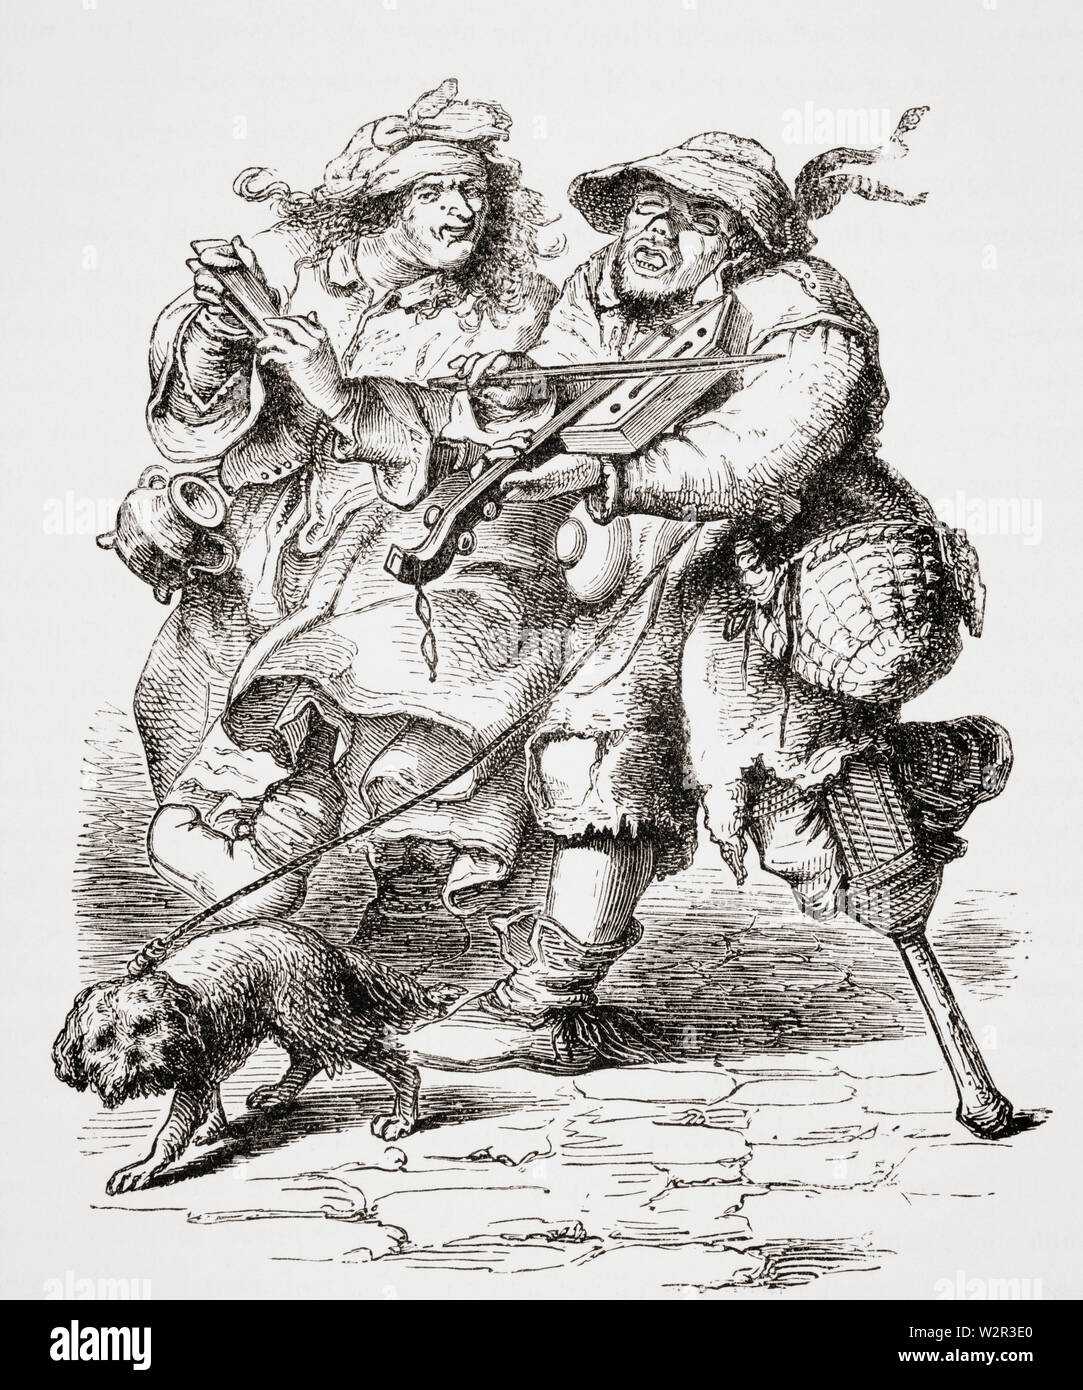 Bettler spielen Geige und seine Frau begleitet ihn mit Knochen. Kopie eines alten Gravur des siebzehnten Jahrhunderts. Stockfoto